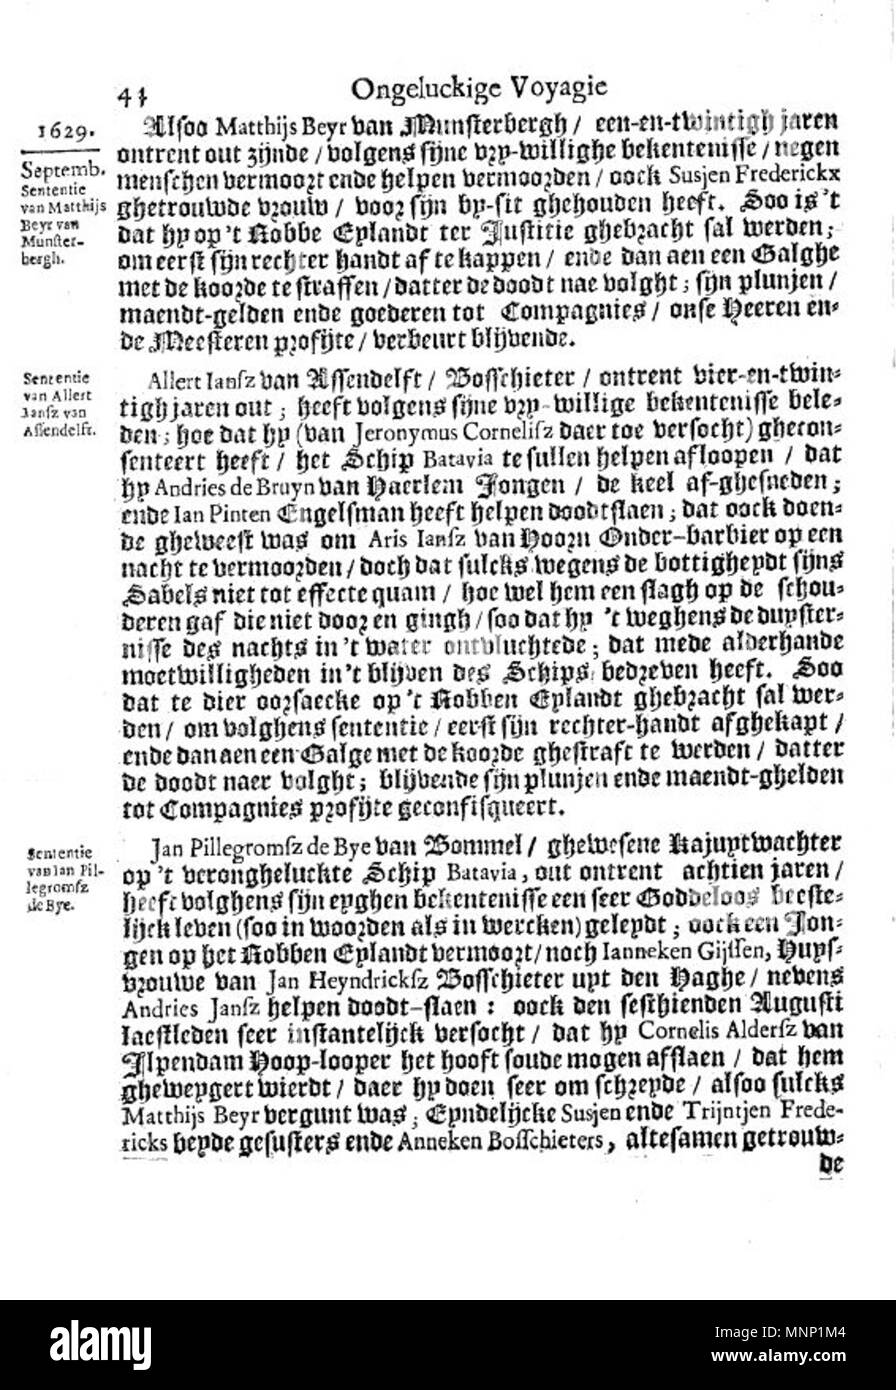 . Questa è una pagina dal 1647 Libro olandese Ongeluckige voyagie, non va schip Batavia ("sfortunato viaggio della nave Batavia'). 1647. Il lavoro è nominalmente di Jan Jansz, ma è in realtà una terza persona tranposition della gazzetta di Francisco Pelsaert. 942 Ongeluckige voyagie vant schip Batavia (pagina 44) Foto Stock